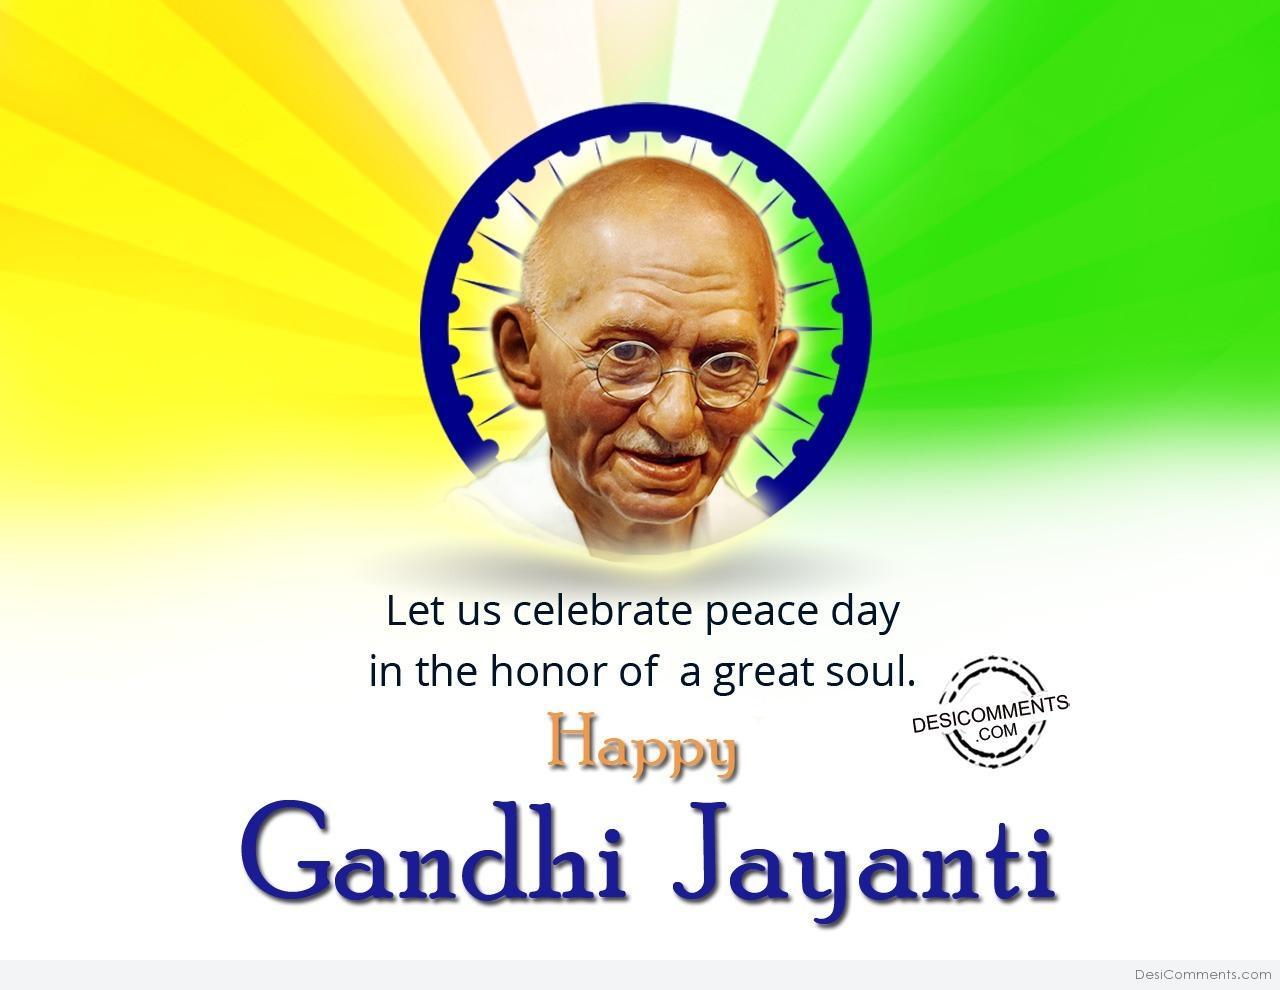 Gandhi Jayanti Picture, Image, Photo